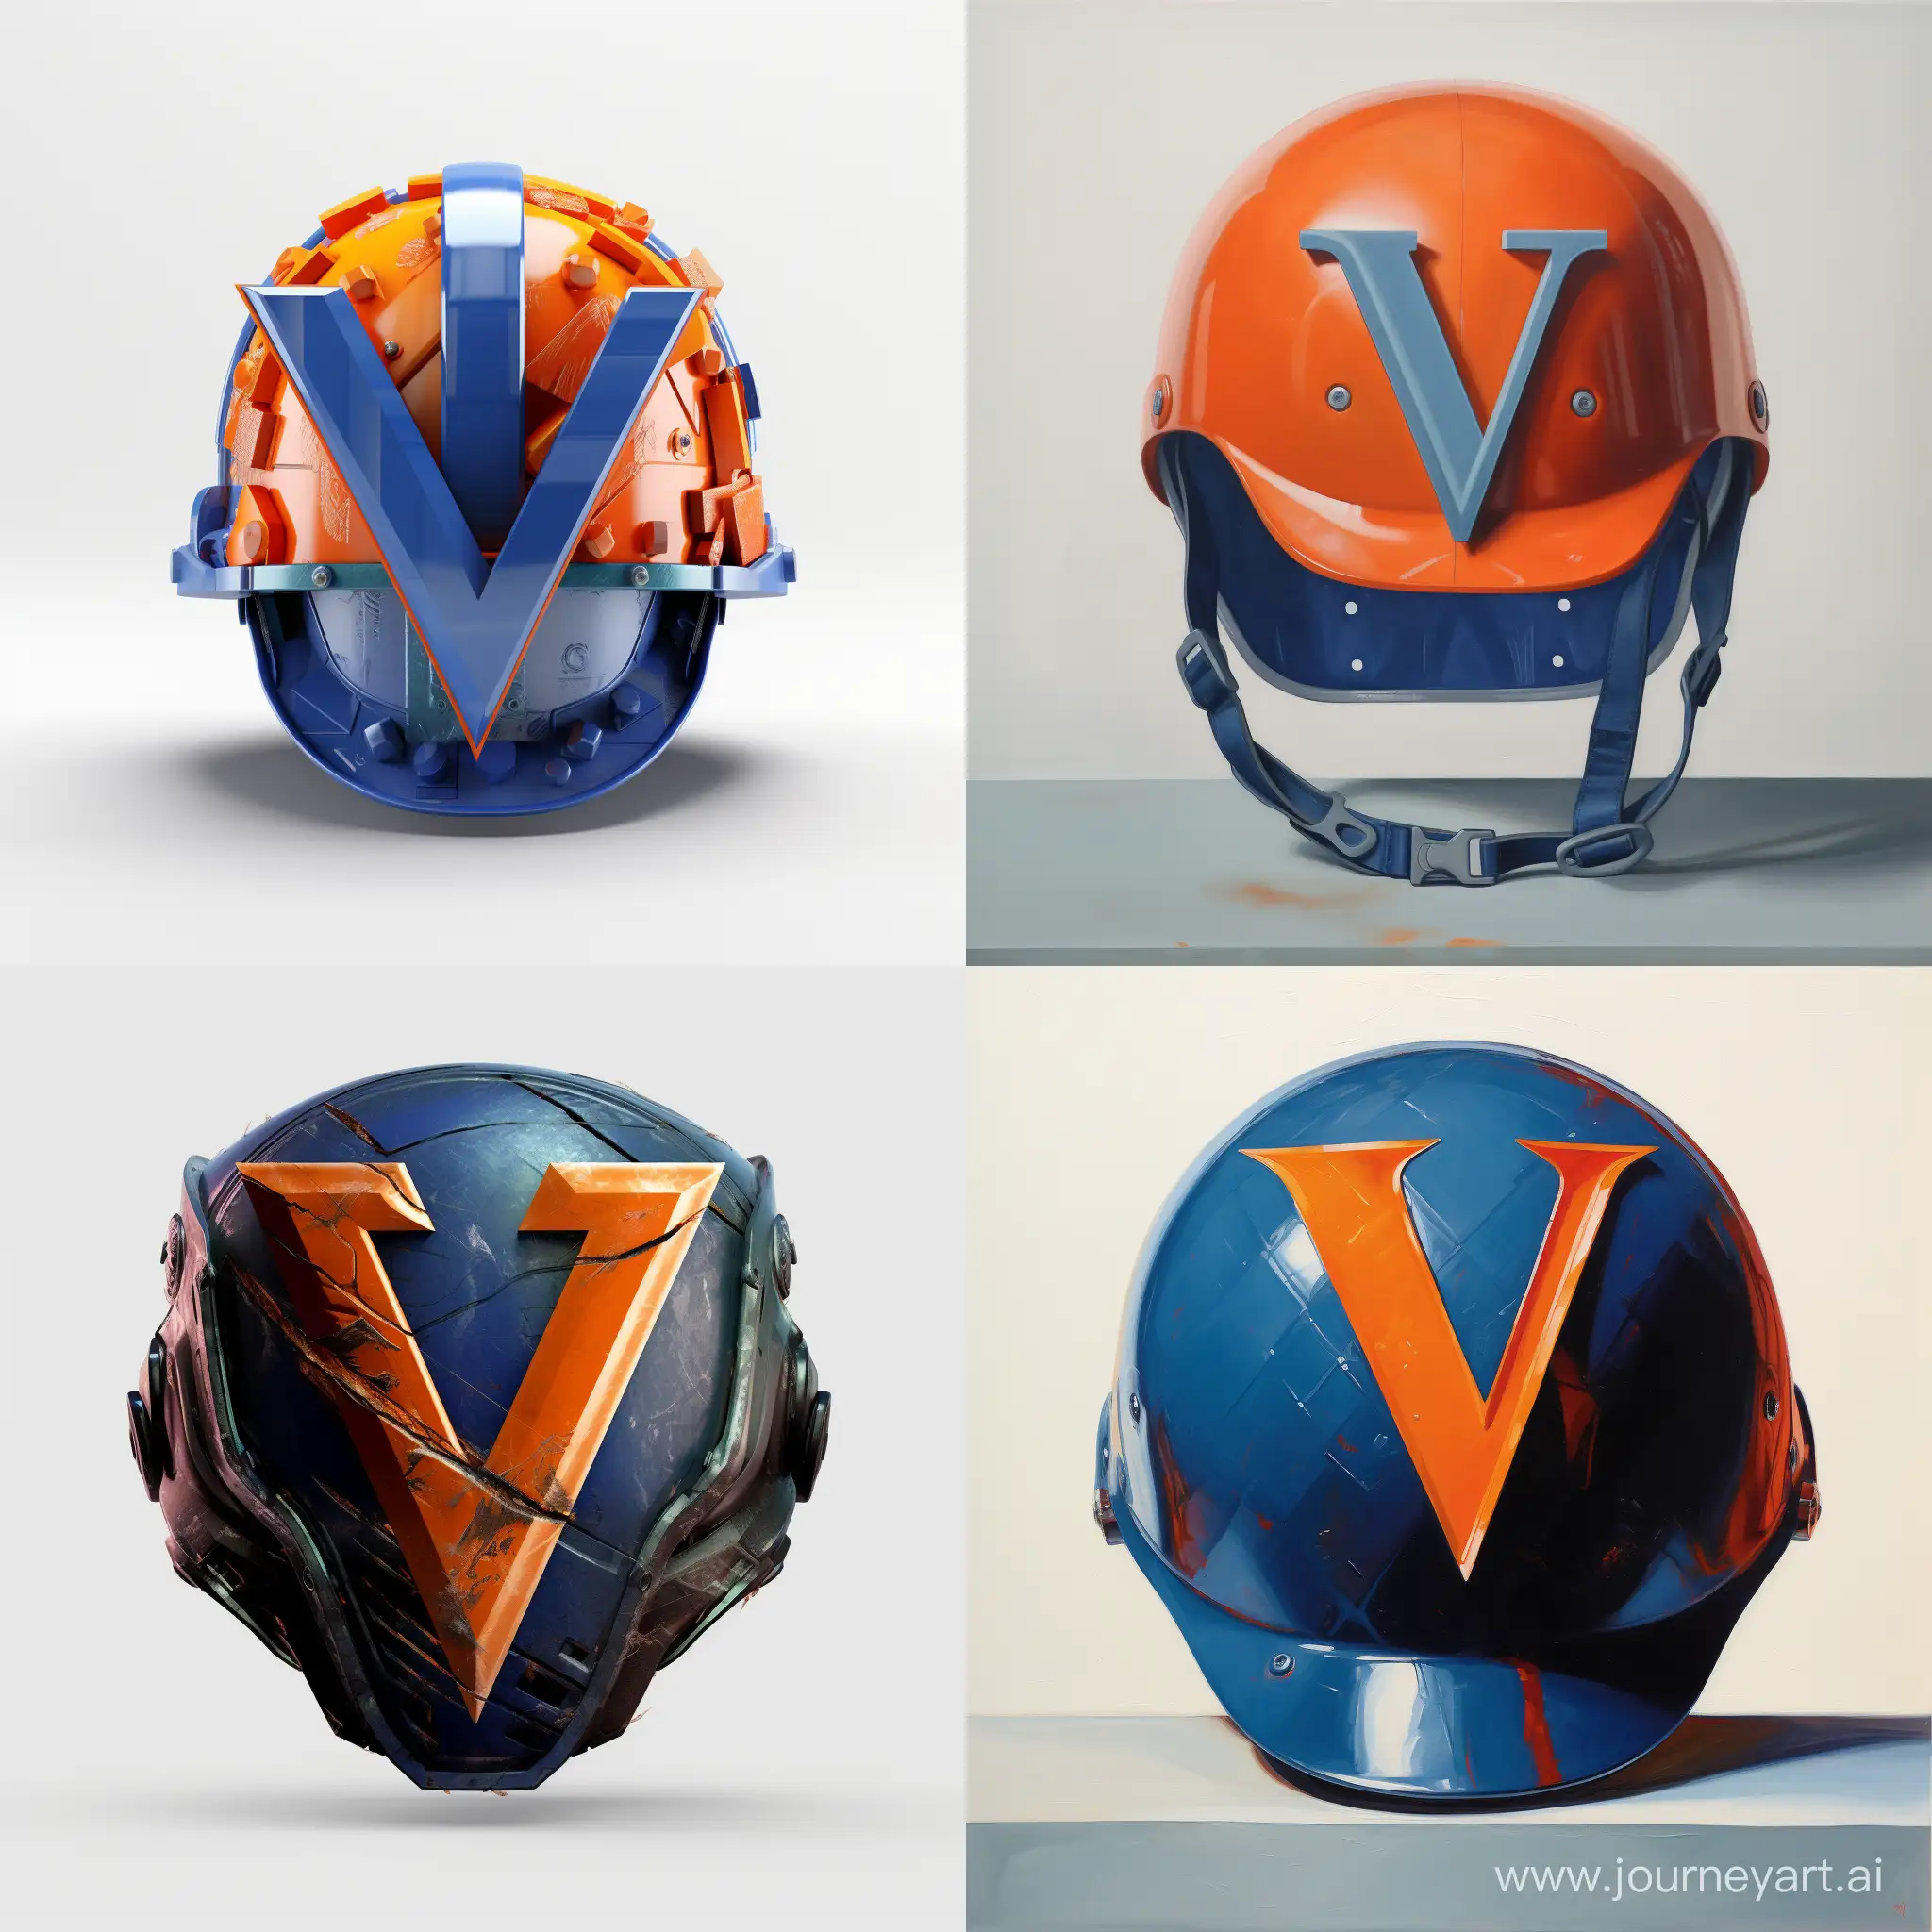 Blue safety helmet with orange letter V.